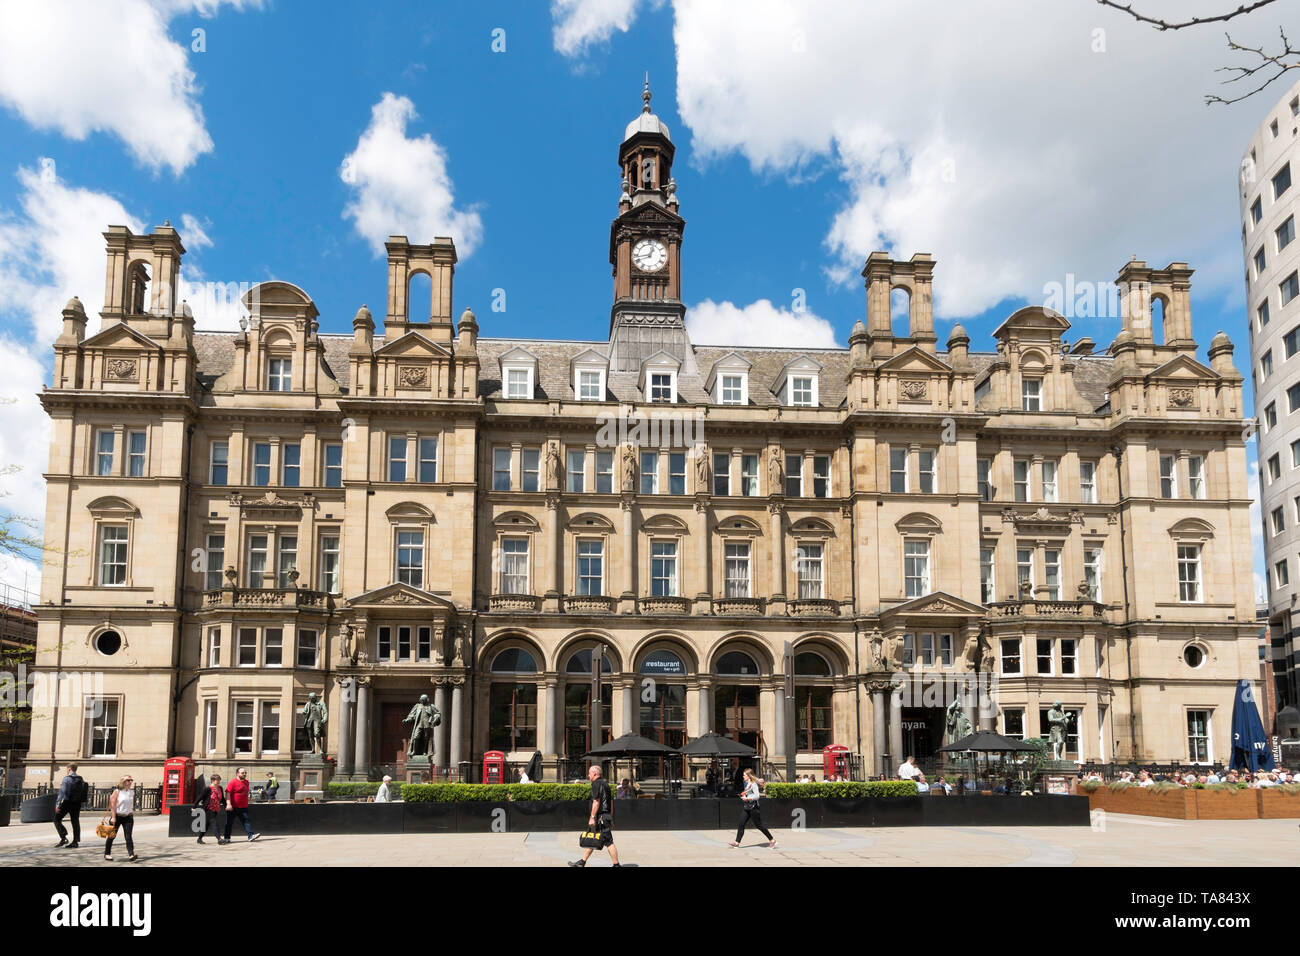 Der ehemalige General Post Office Gebäude in der Stadt, das Stadtzentrum von Leeds, Yorkshire, England, Großbritannien Stockfoto